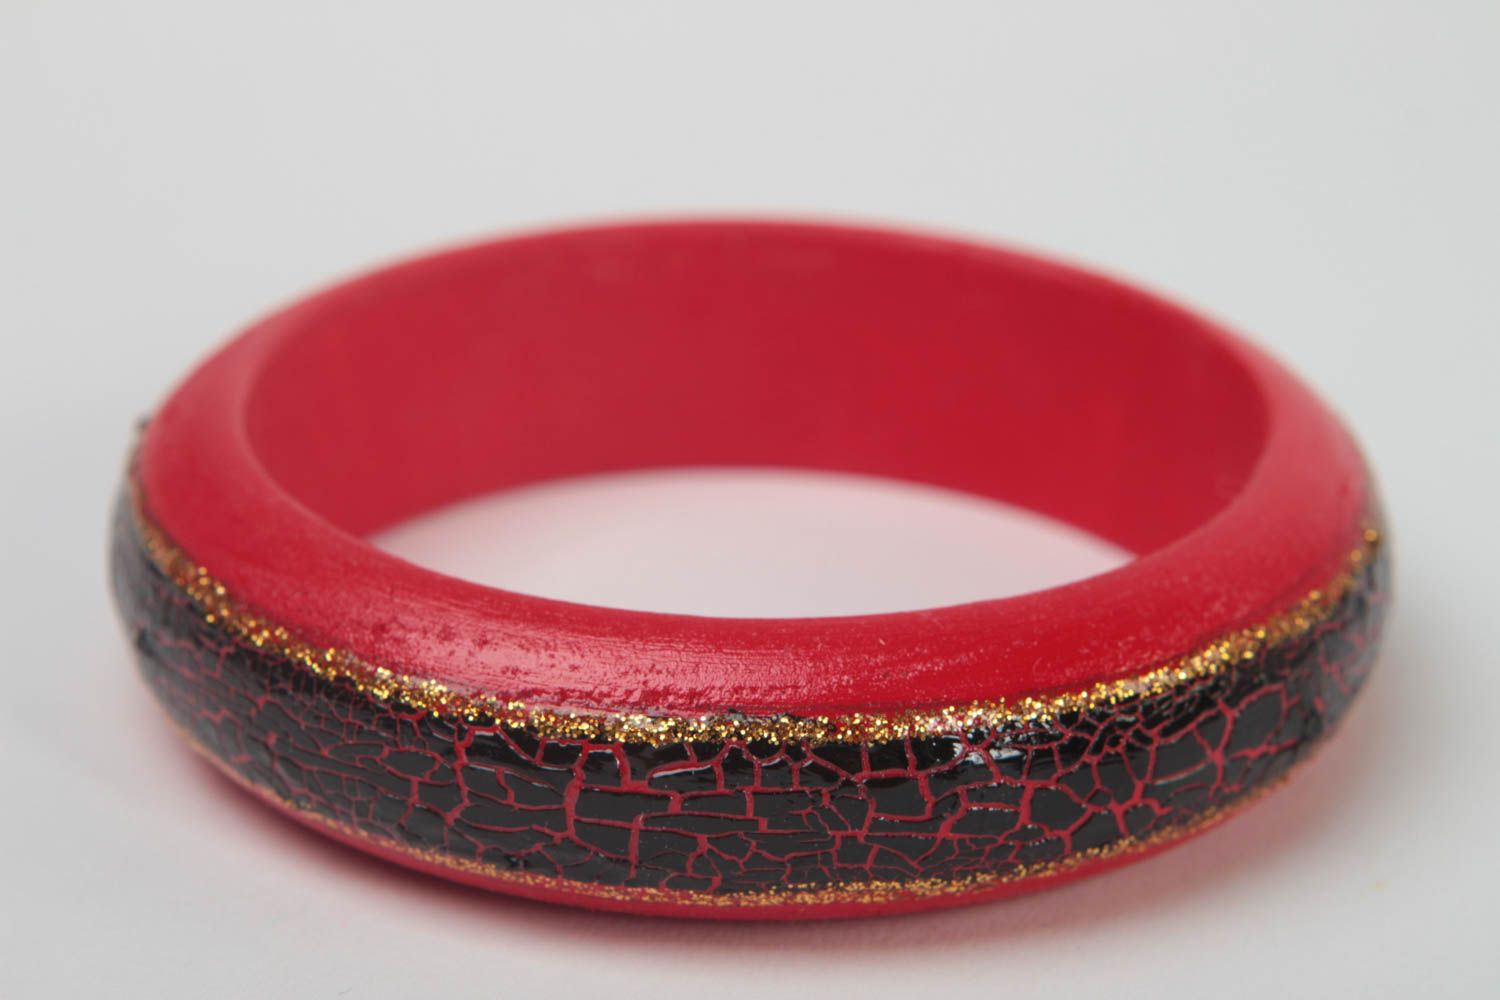 Handmade bracelet wooden bracelet unusual accessory wooden jewelry gift ideas photo 1